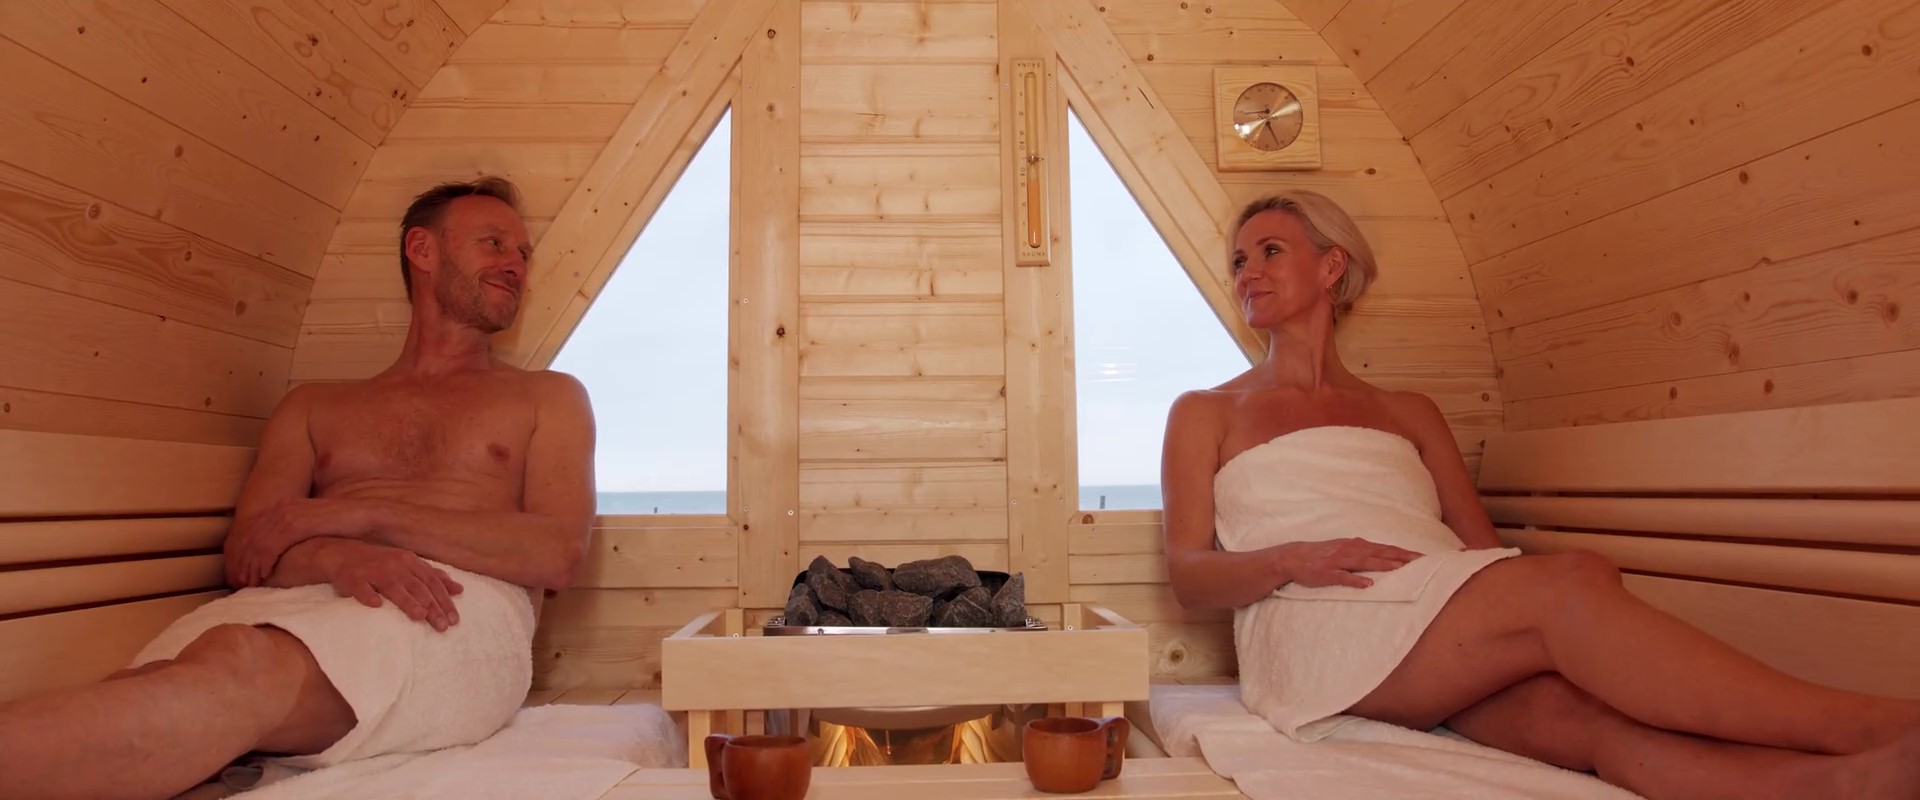 Frau und Mann im Saunafass beim saunieren